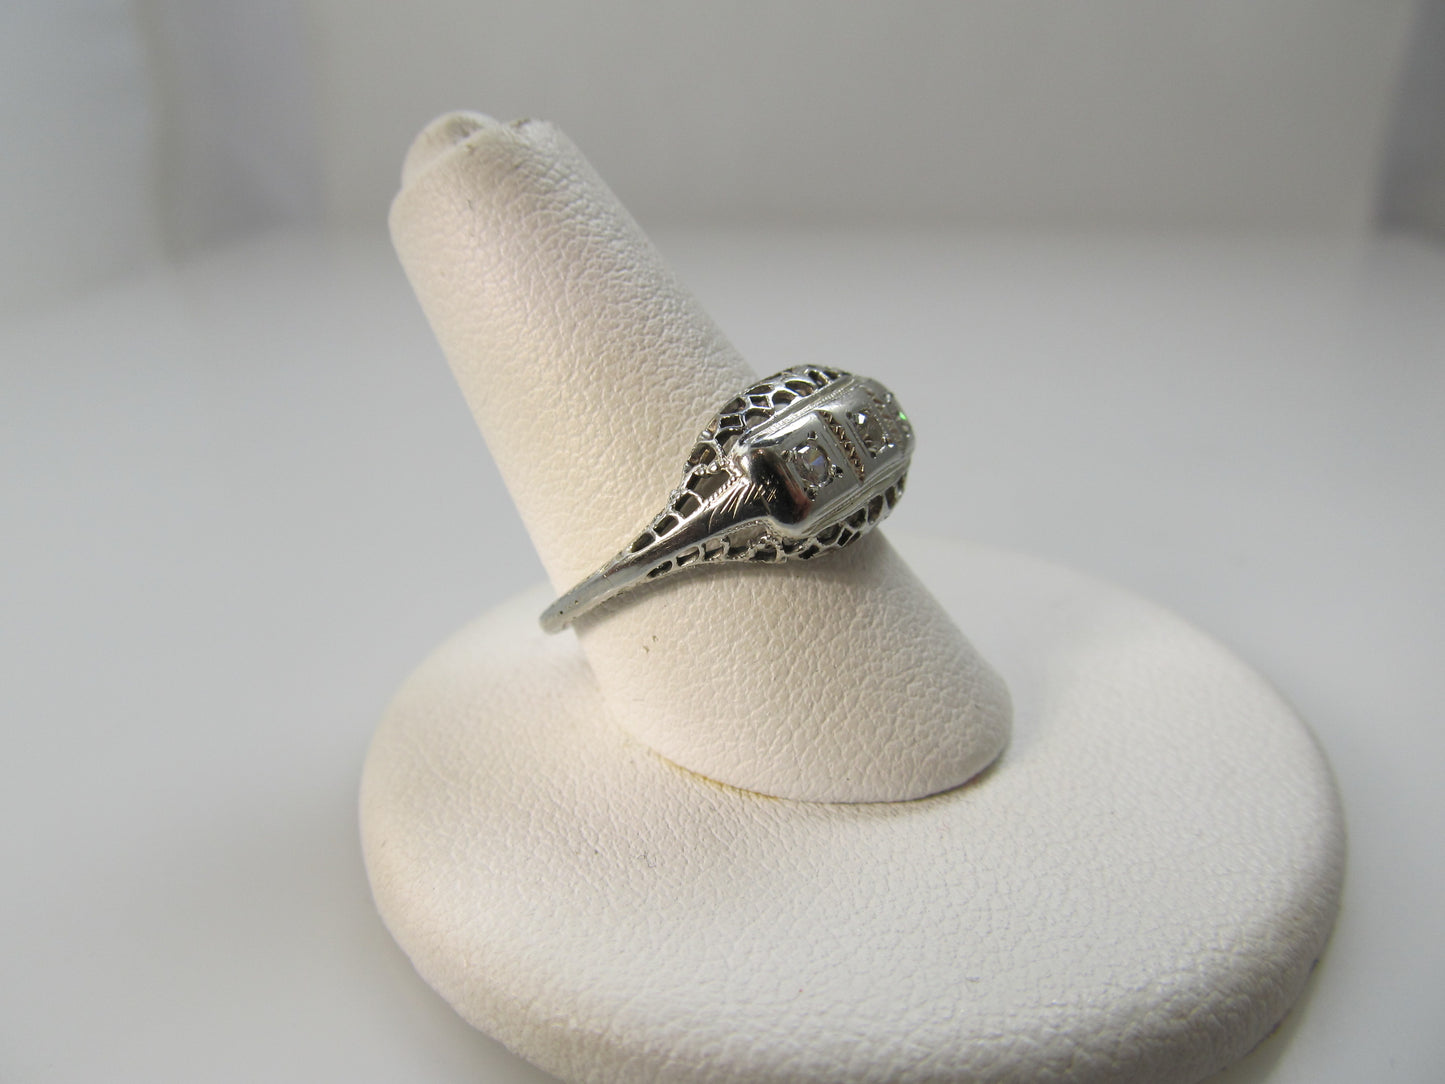 Vintage 14k white gold 3 stone diamond ring